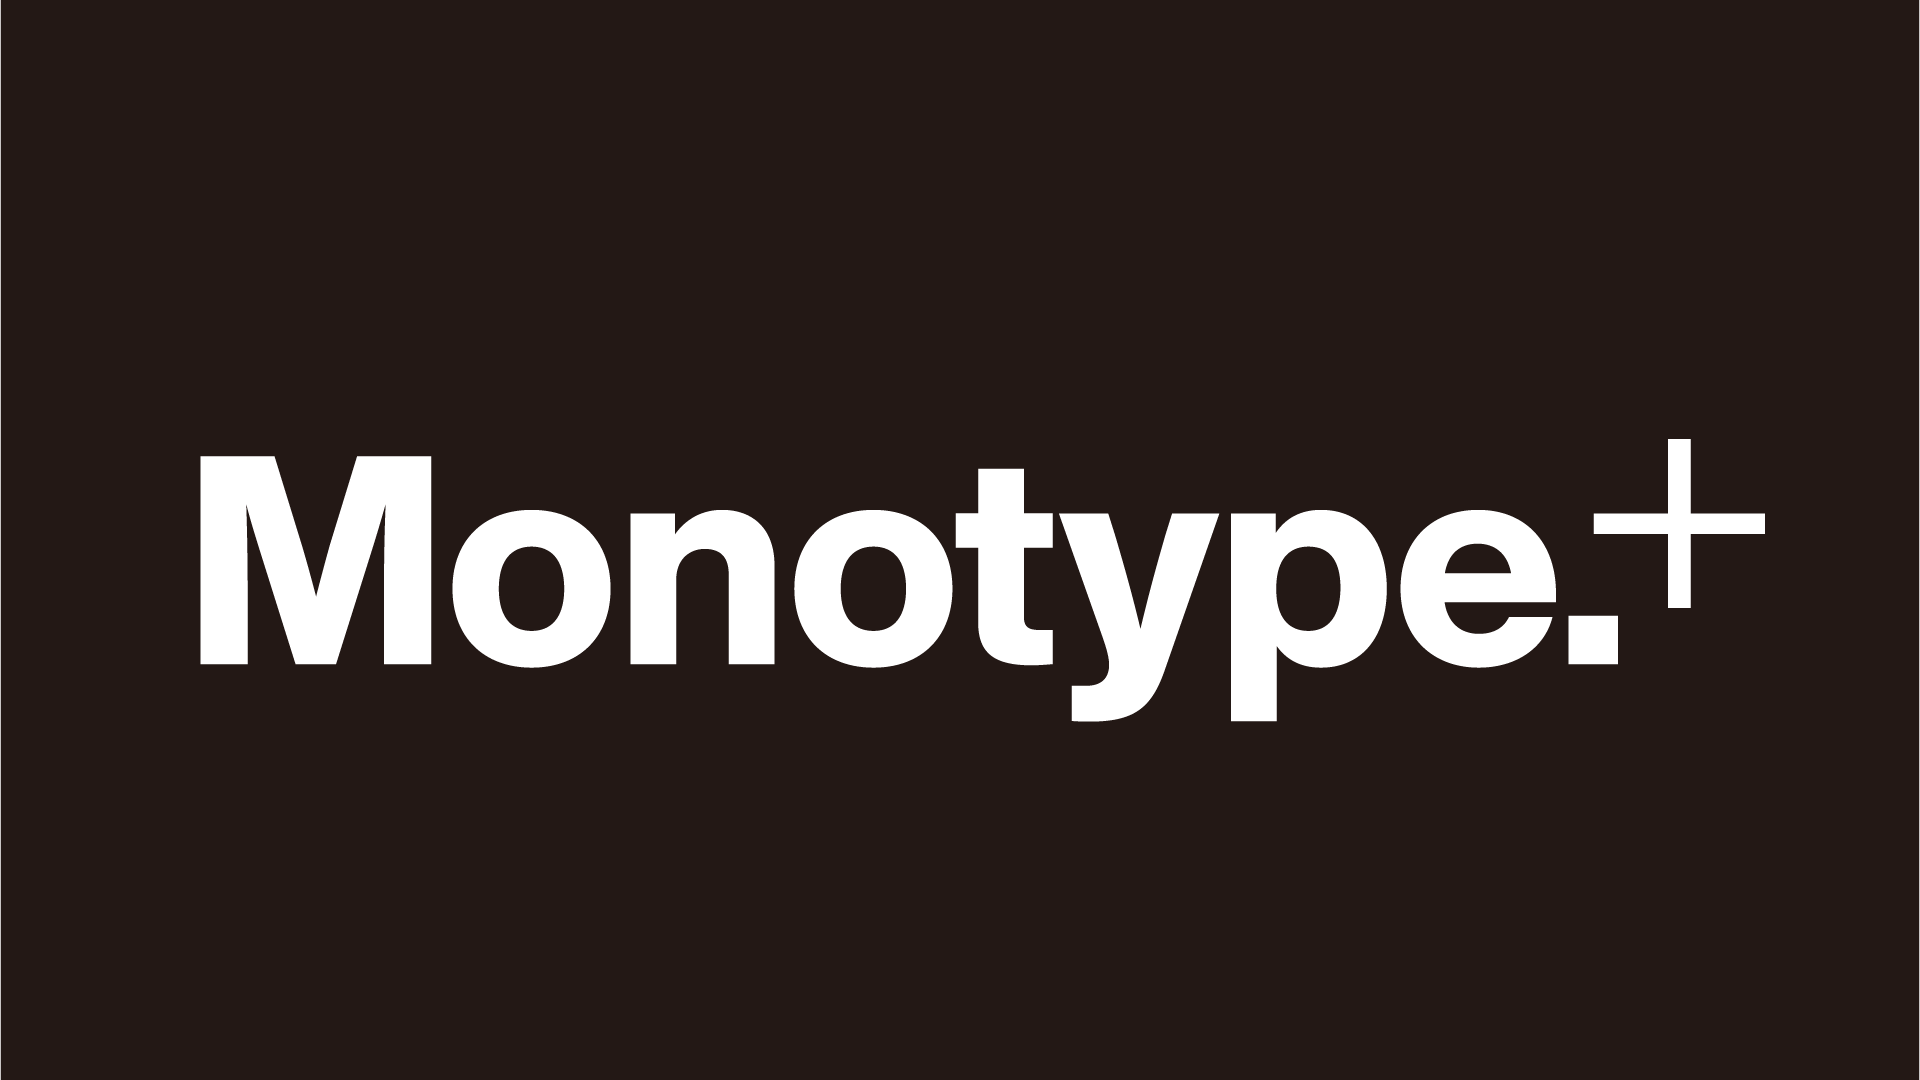 Monotype+